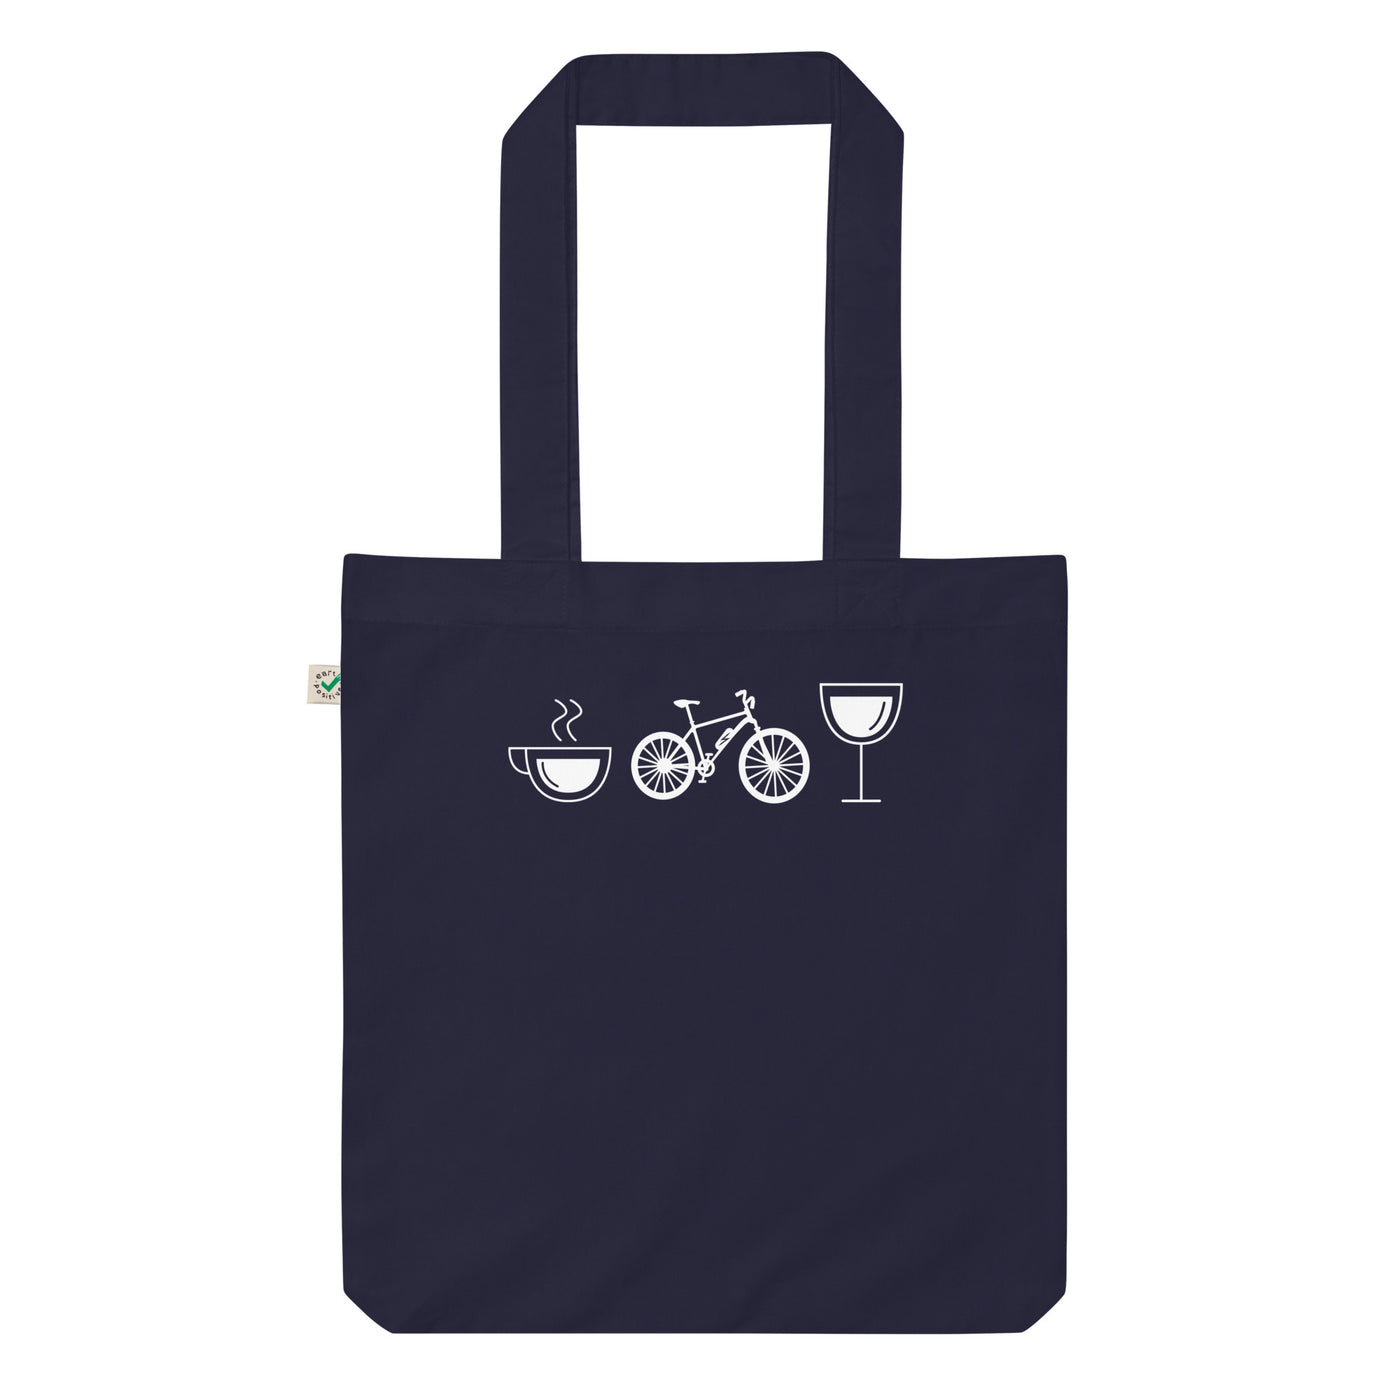 Kaffee, Wein Und E-Bike - Organic Einkaufstasche e-bike Navy